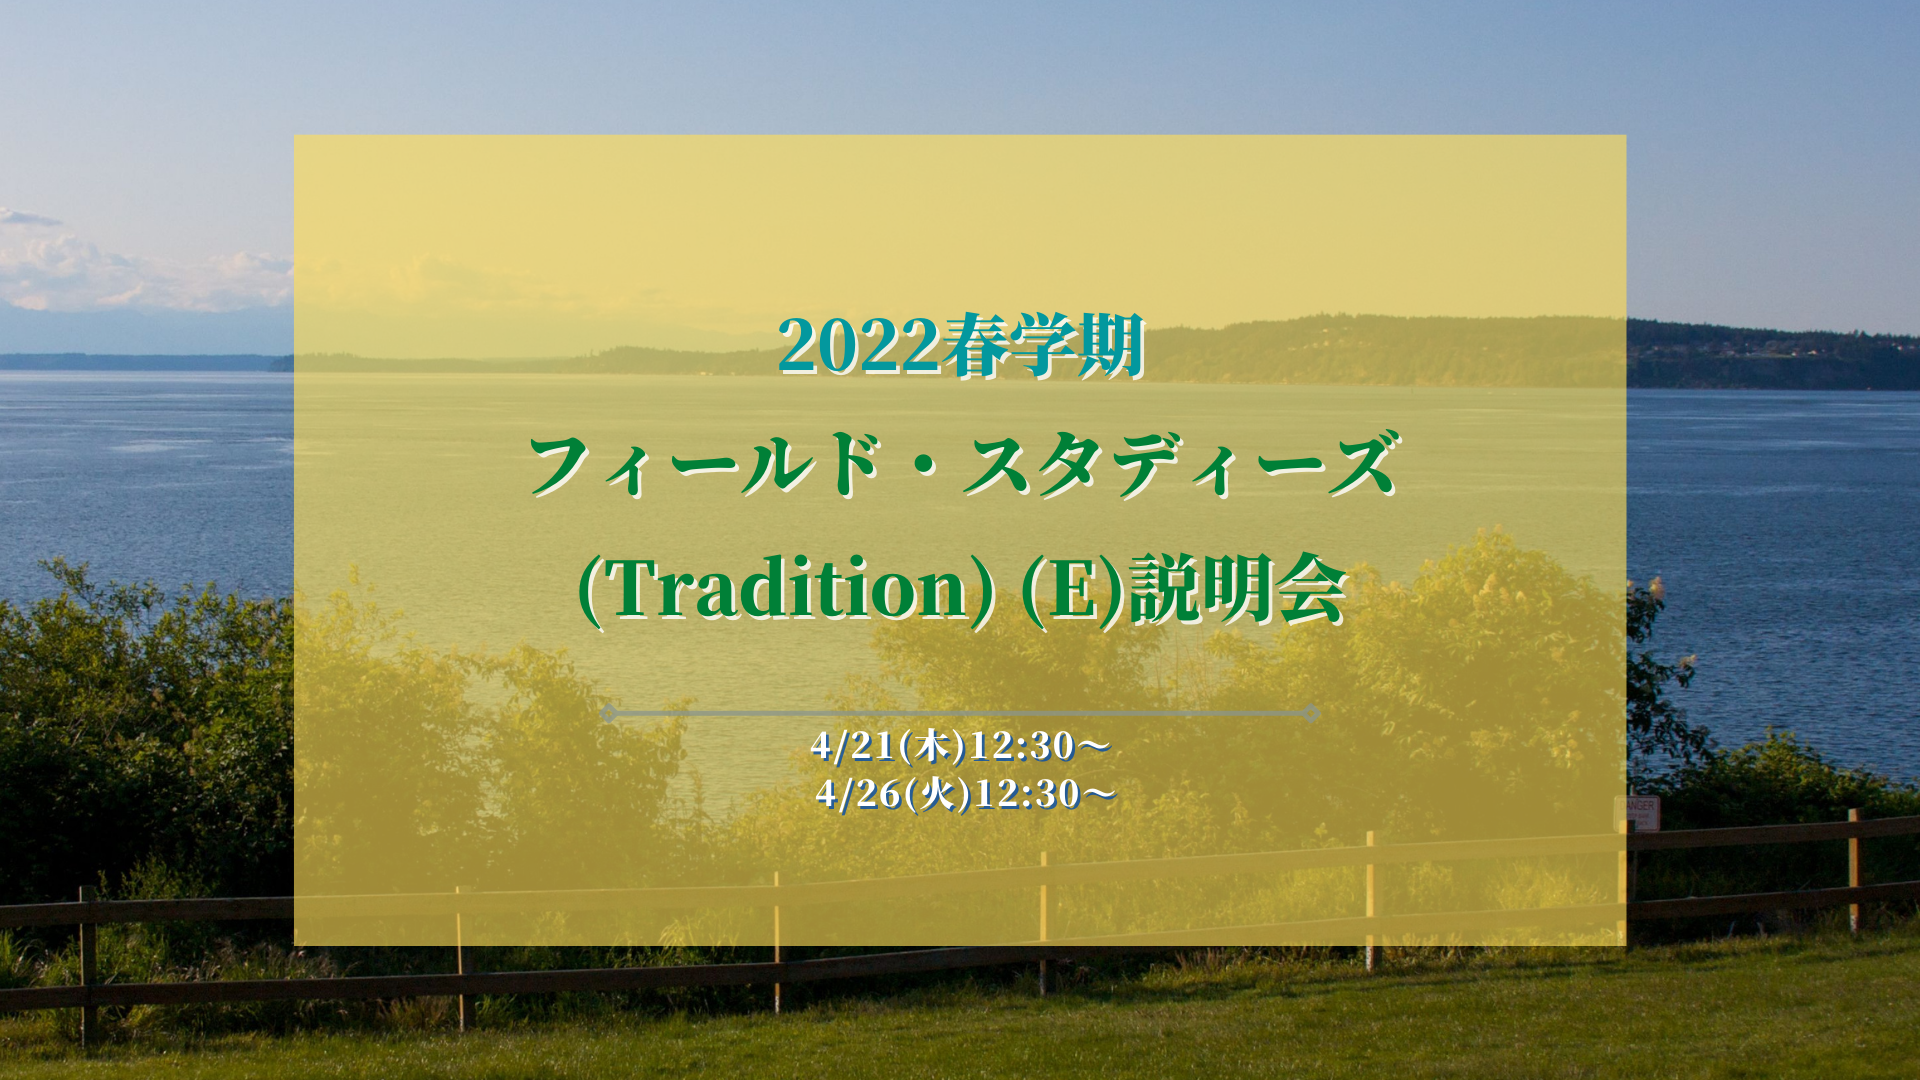 【説明会】4/21, 4/26 2022春学期フィールド・スタディーズ (Tradition) (E)